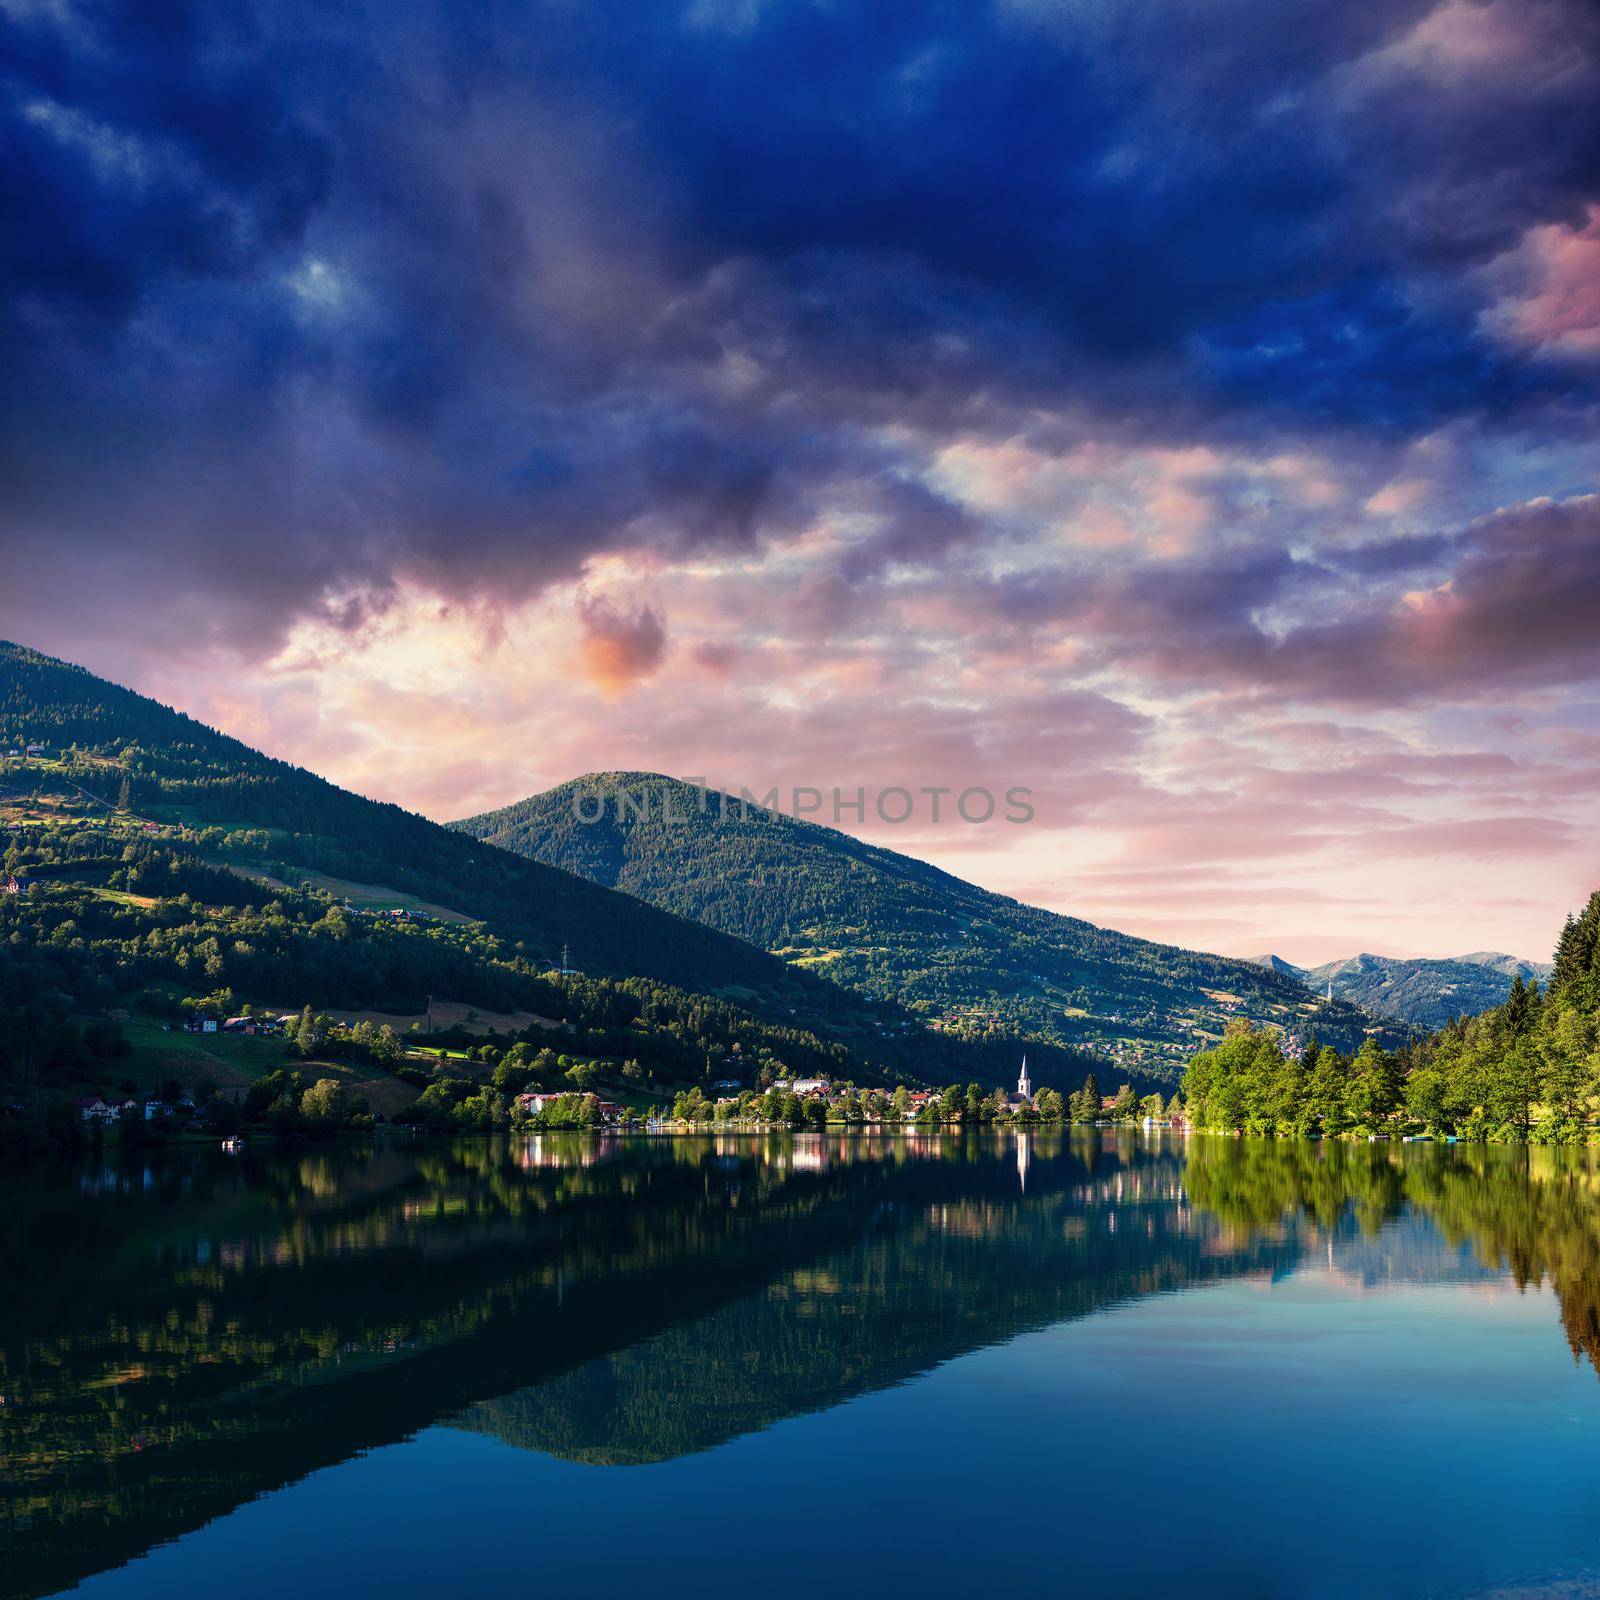 Mountain Lake in the Alpine mountains. Italy